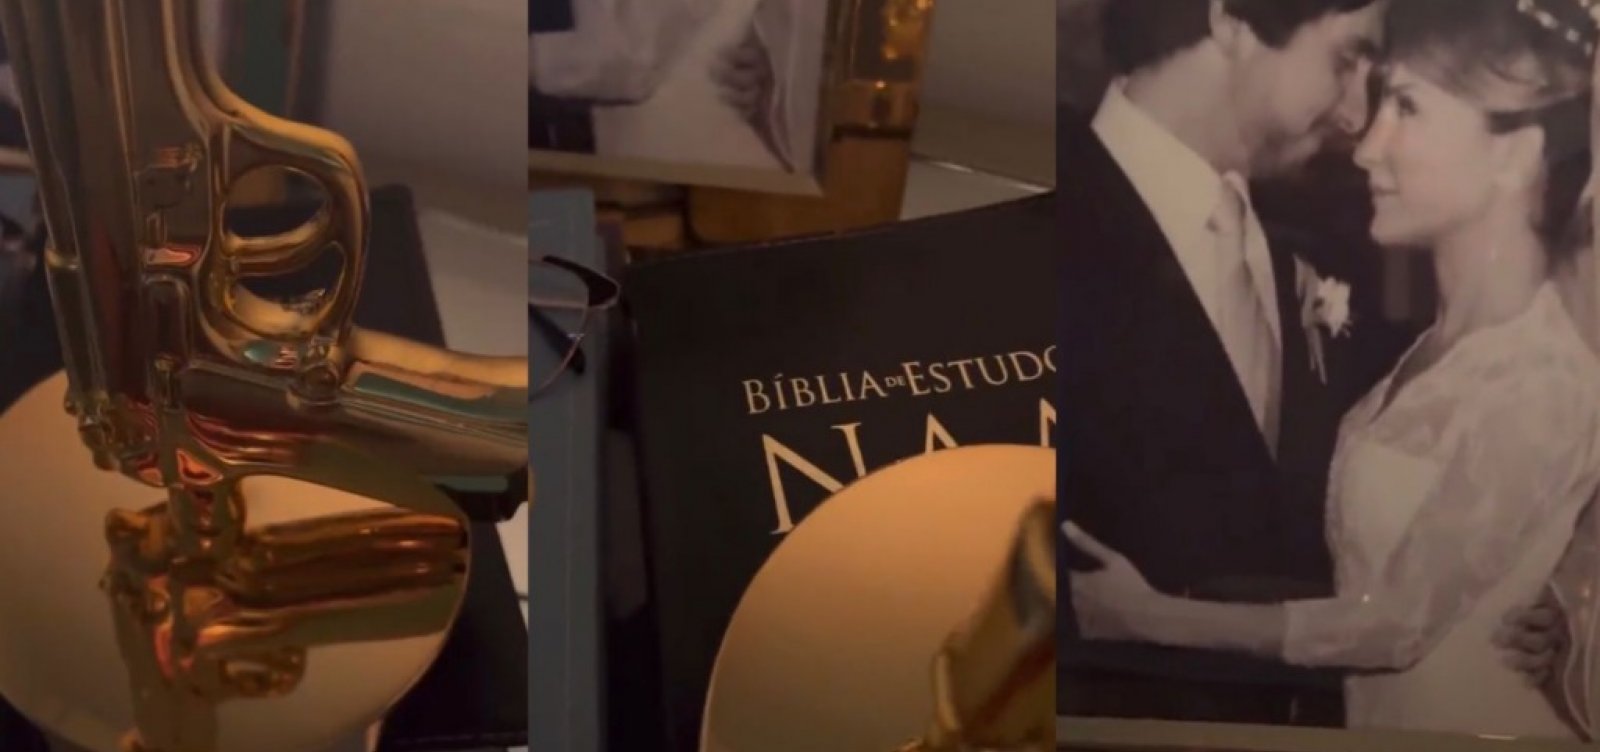 Claudia Leitte posta abajur em formato de arma sobre bblia e causa revolta  em seguidores - Metro 1